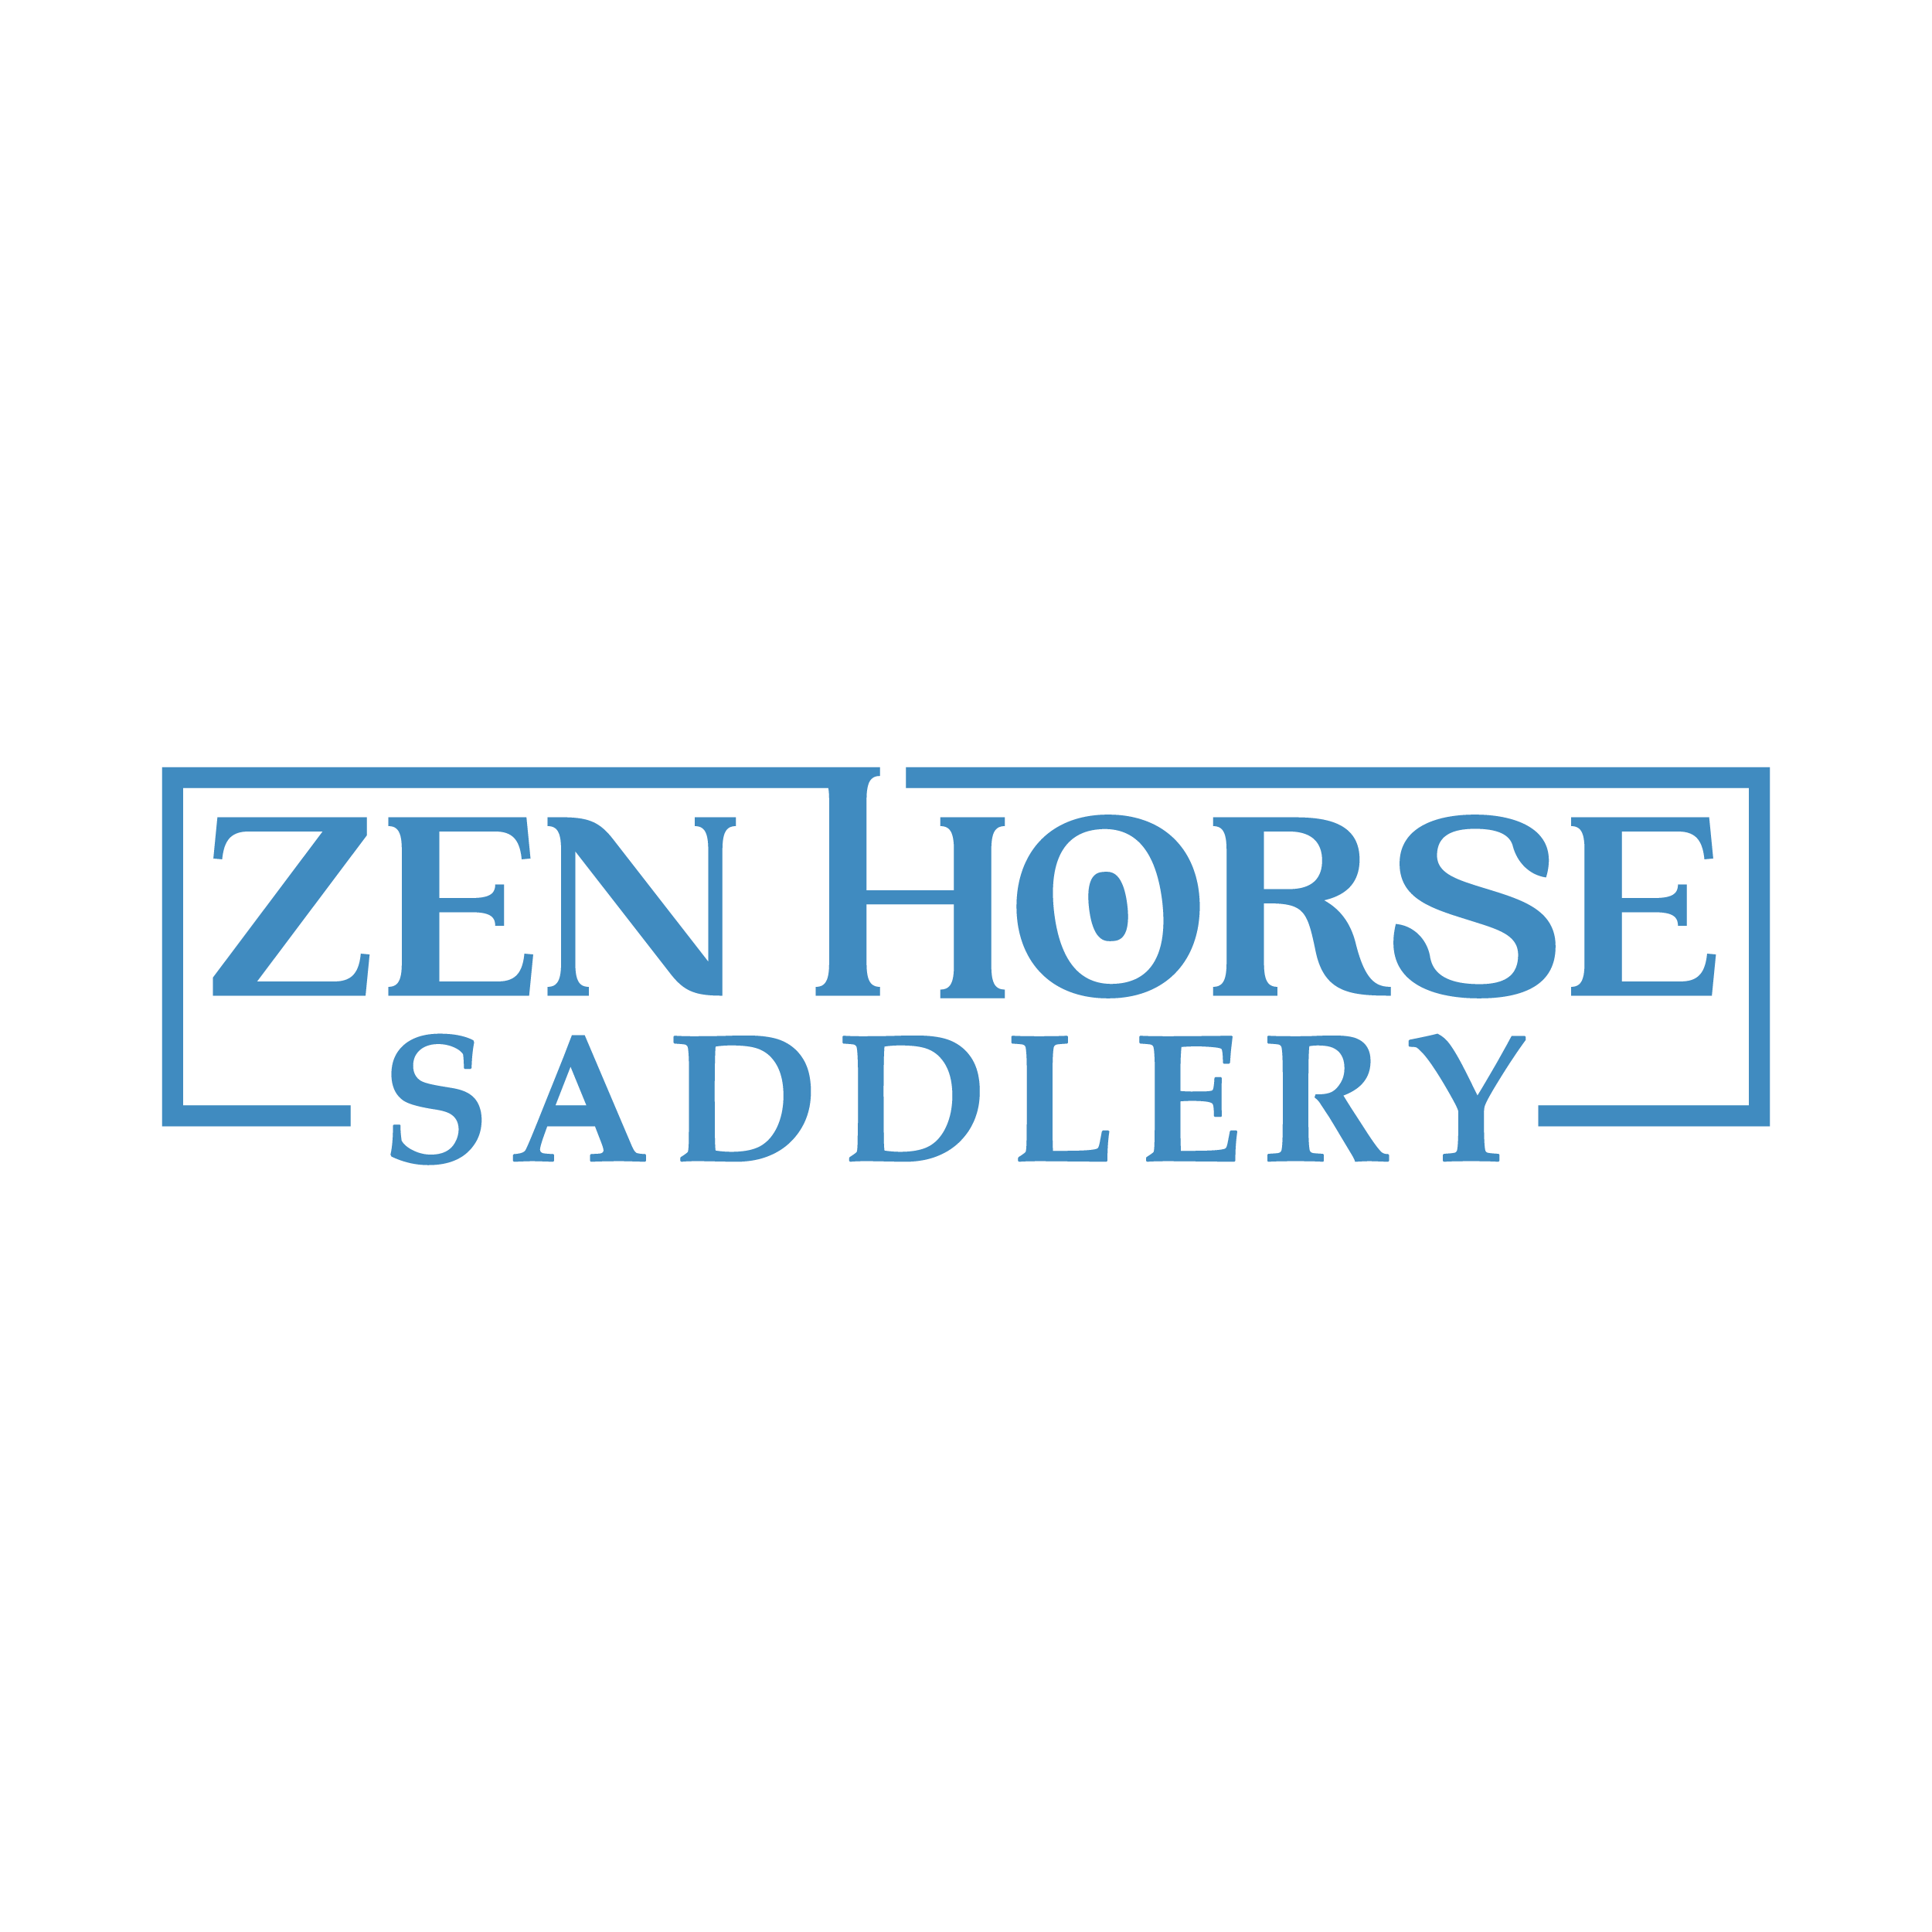 Zen Horse Saddlery